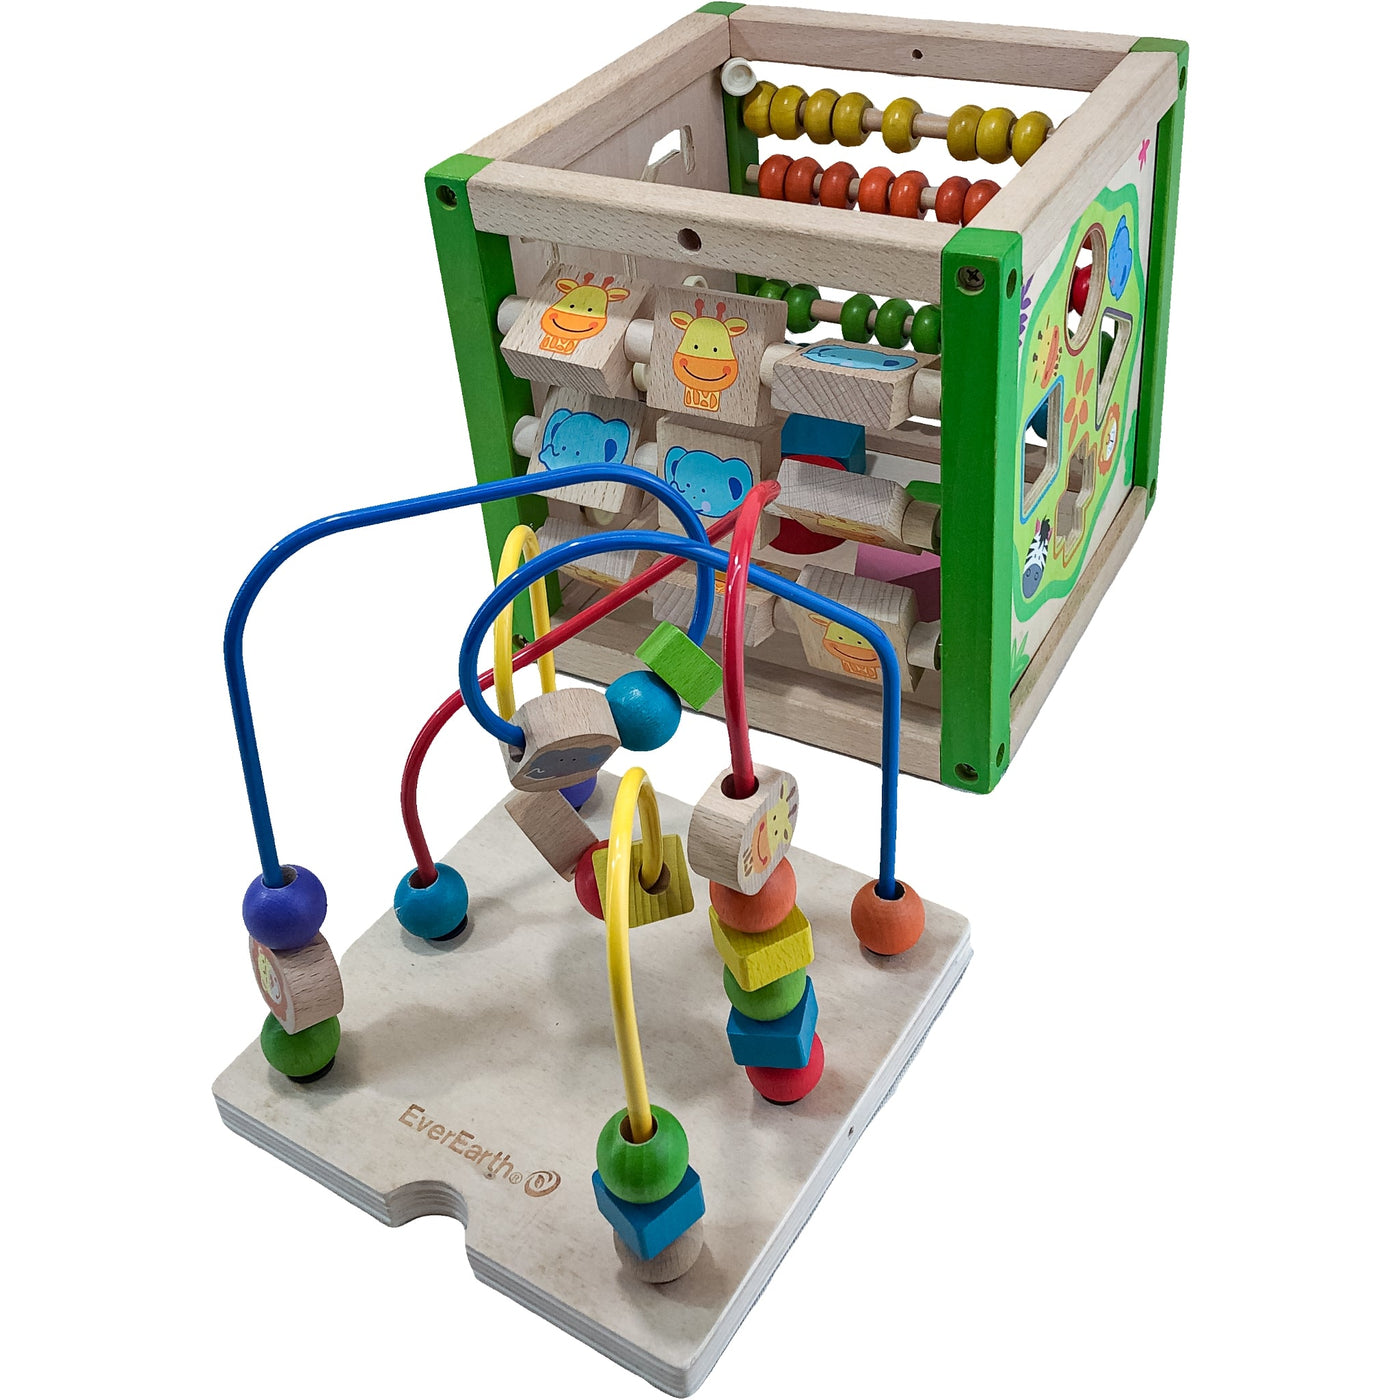 Cube d'activités "Cube d'activités multi-jeux" de seconde main en bois pour enfant à partir de 18 mois - Vue 3